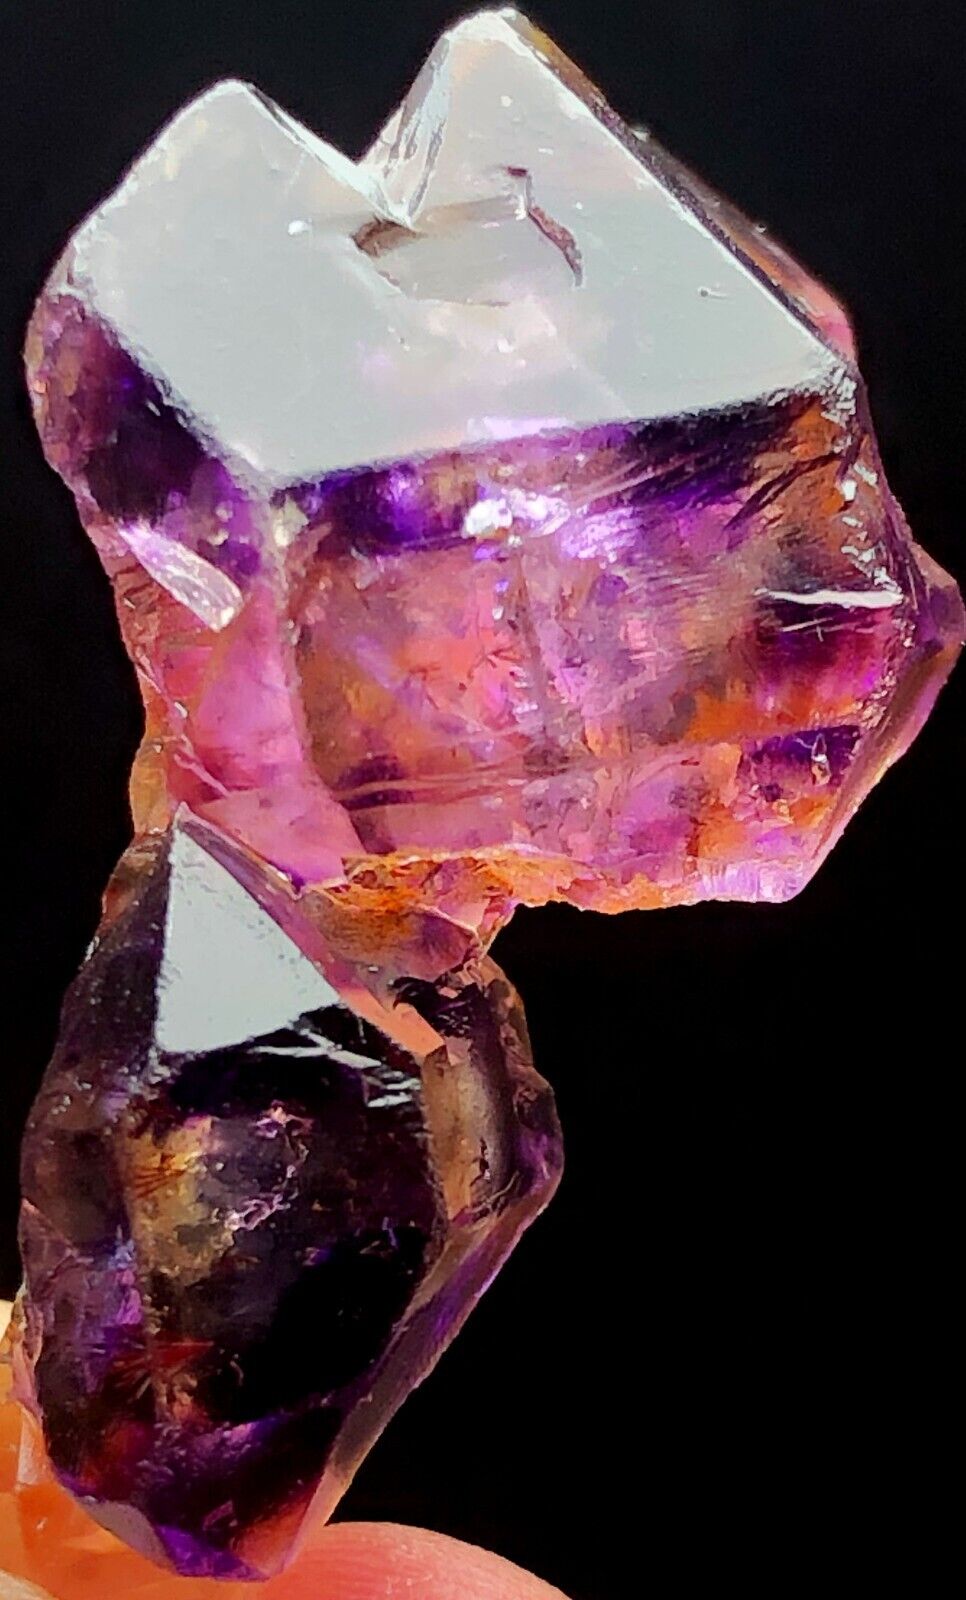 20g 1 Diamond Grade Super Seven Skeletal Amethyst Quartz Crystal Specimen N353